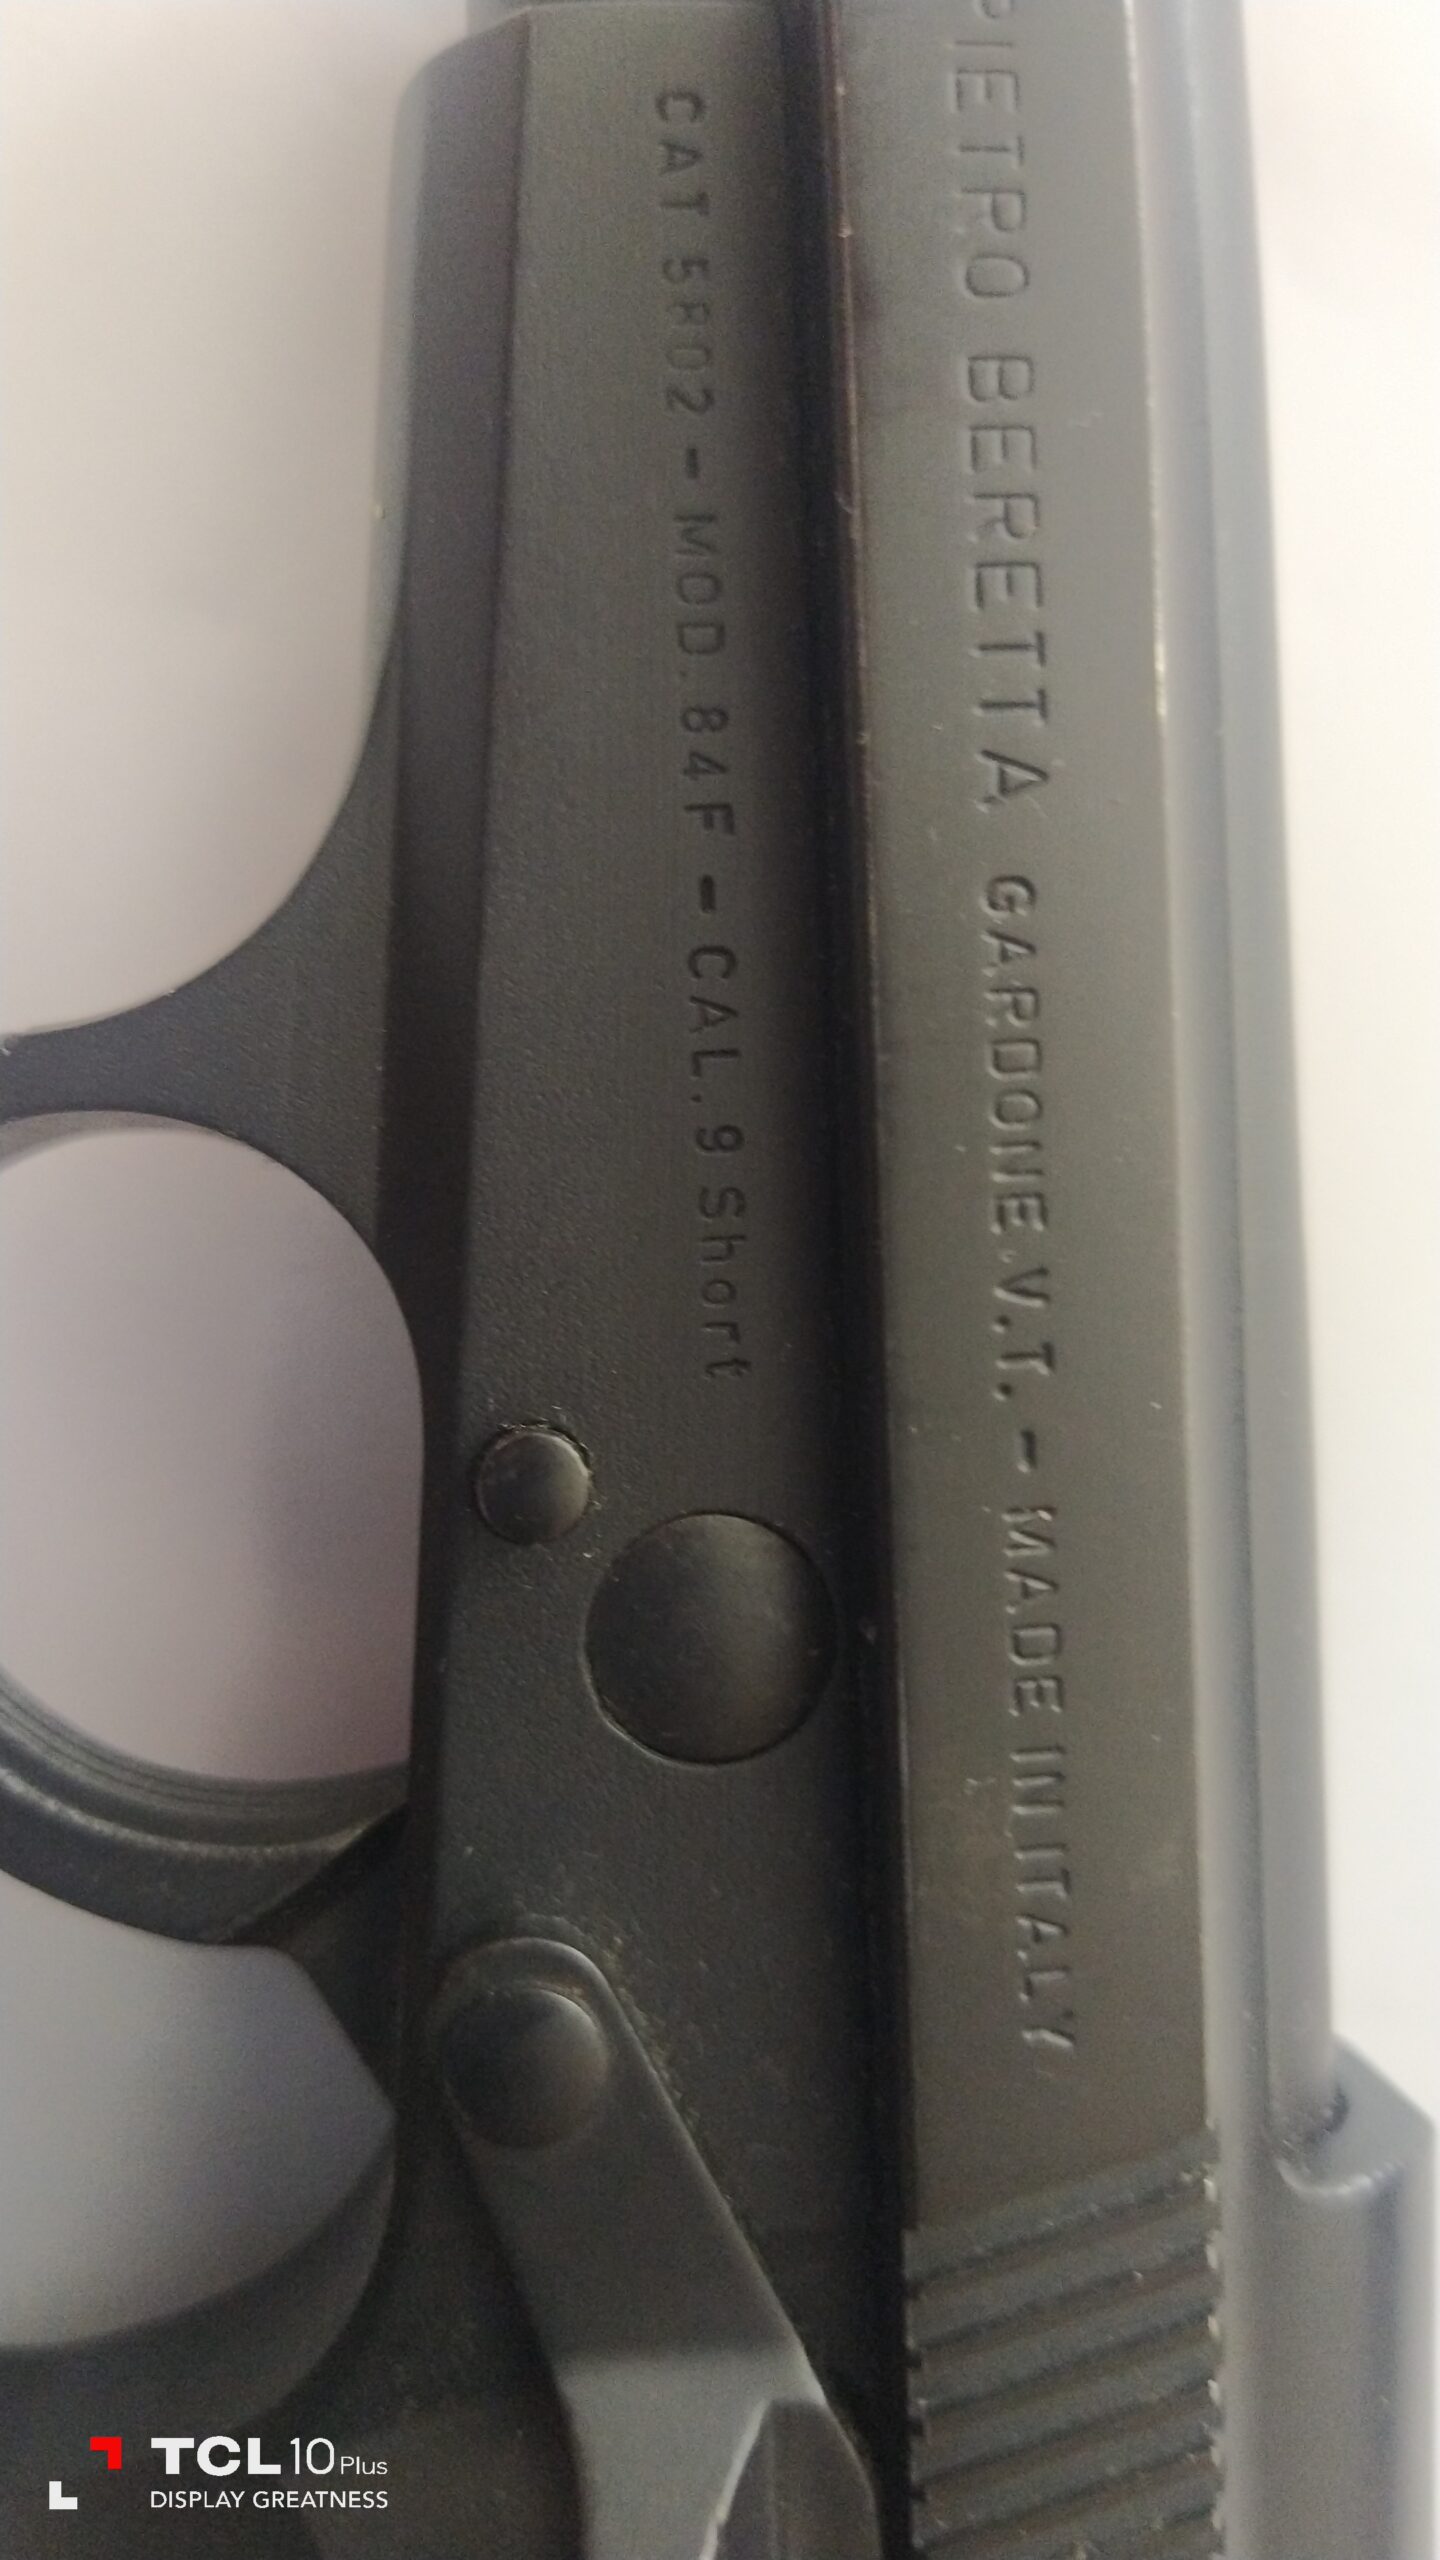 ACİLLEmniyet görevlisinden eşine az rastlanır Beretta f84 9.0 mm